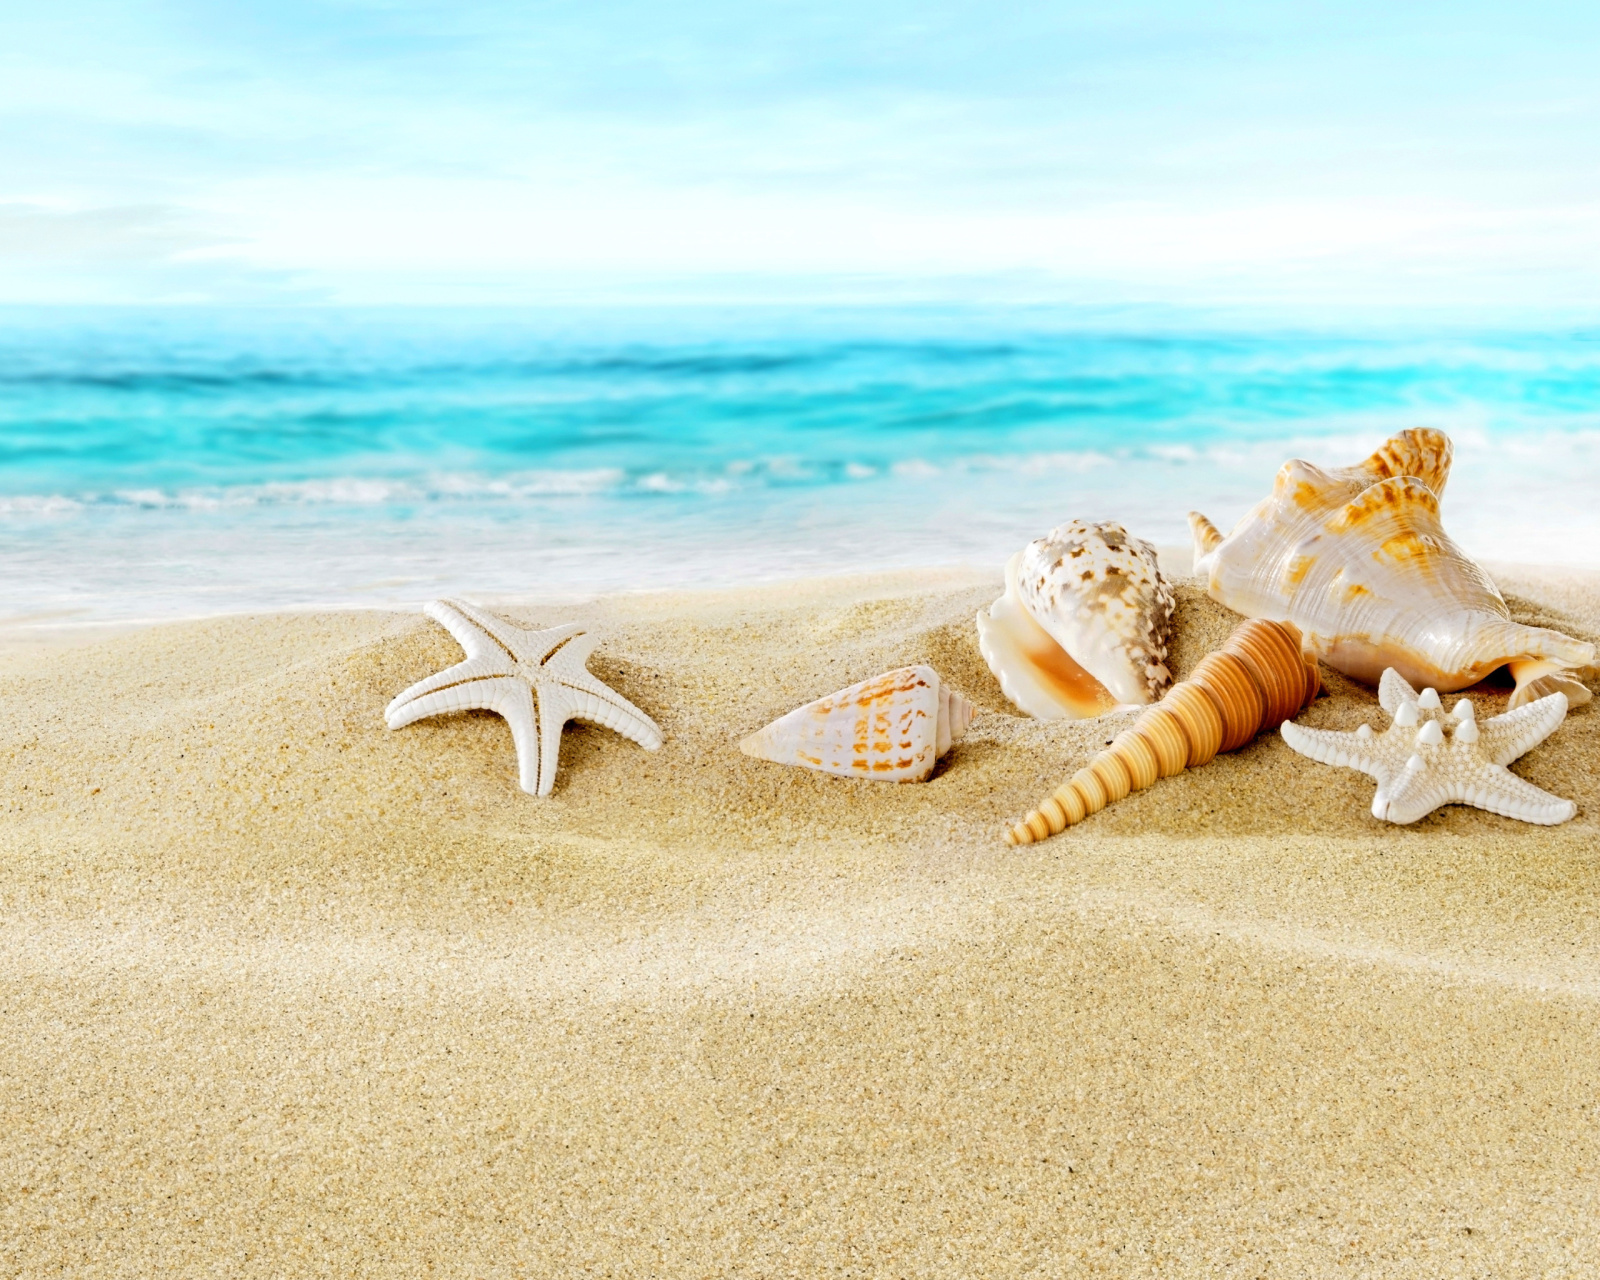 Обои Seashells on Sand Beach 1600x1280